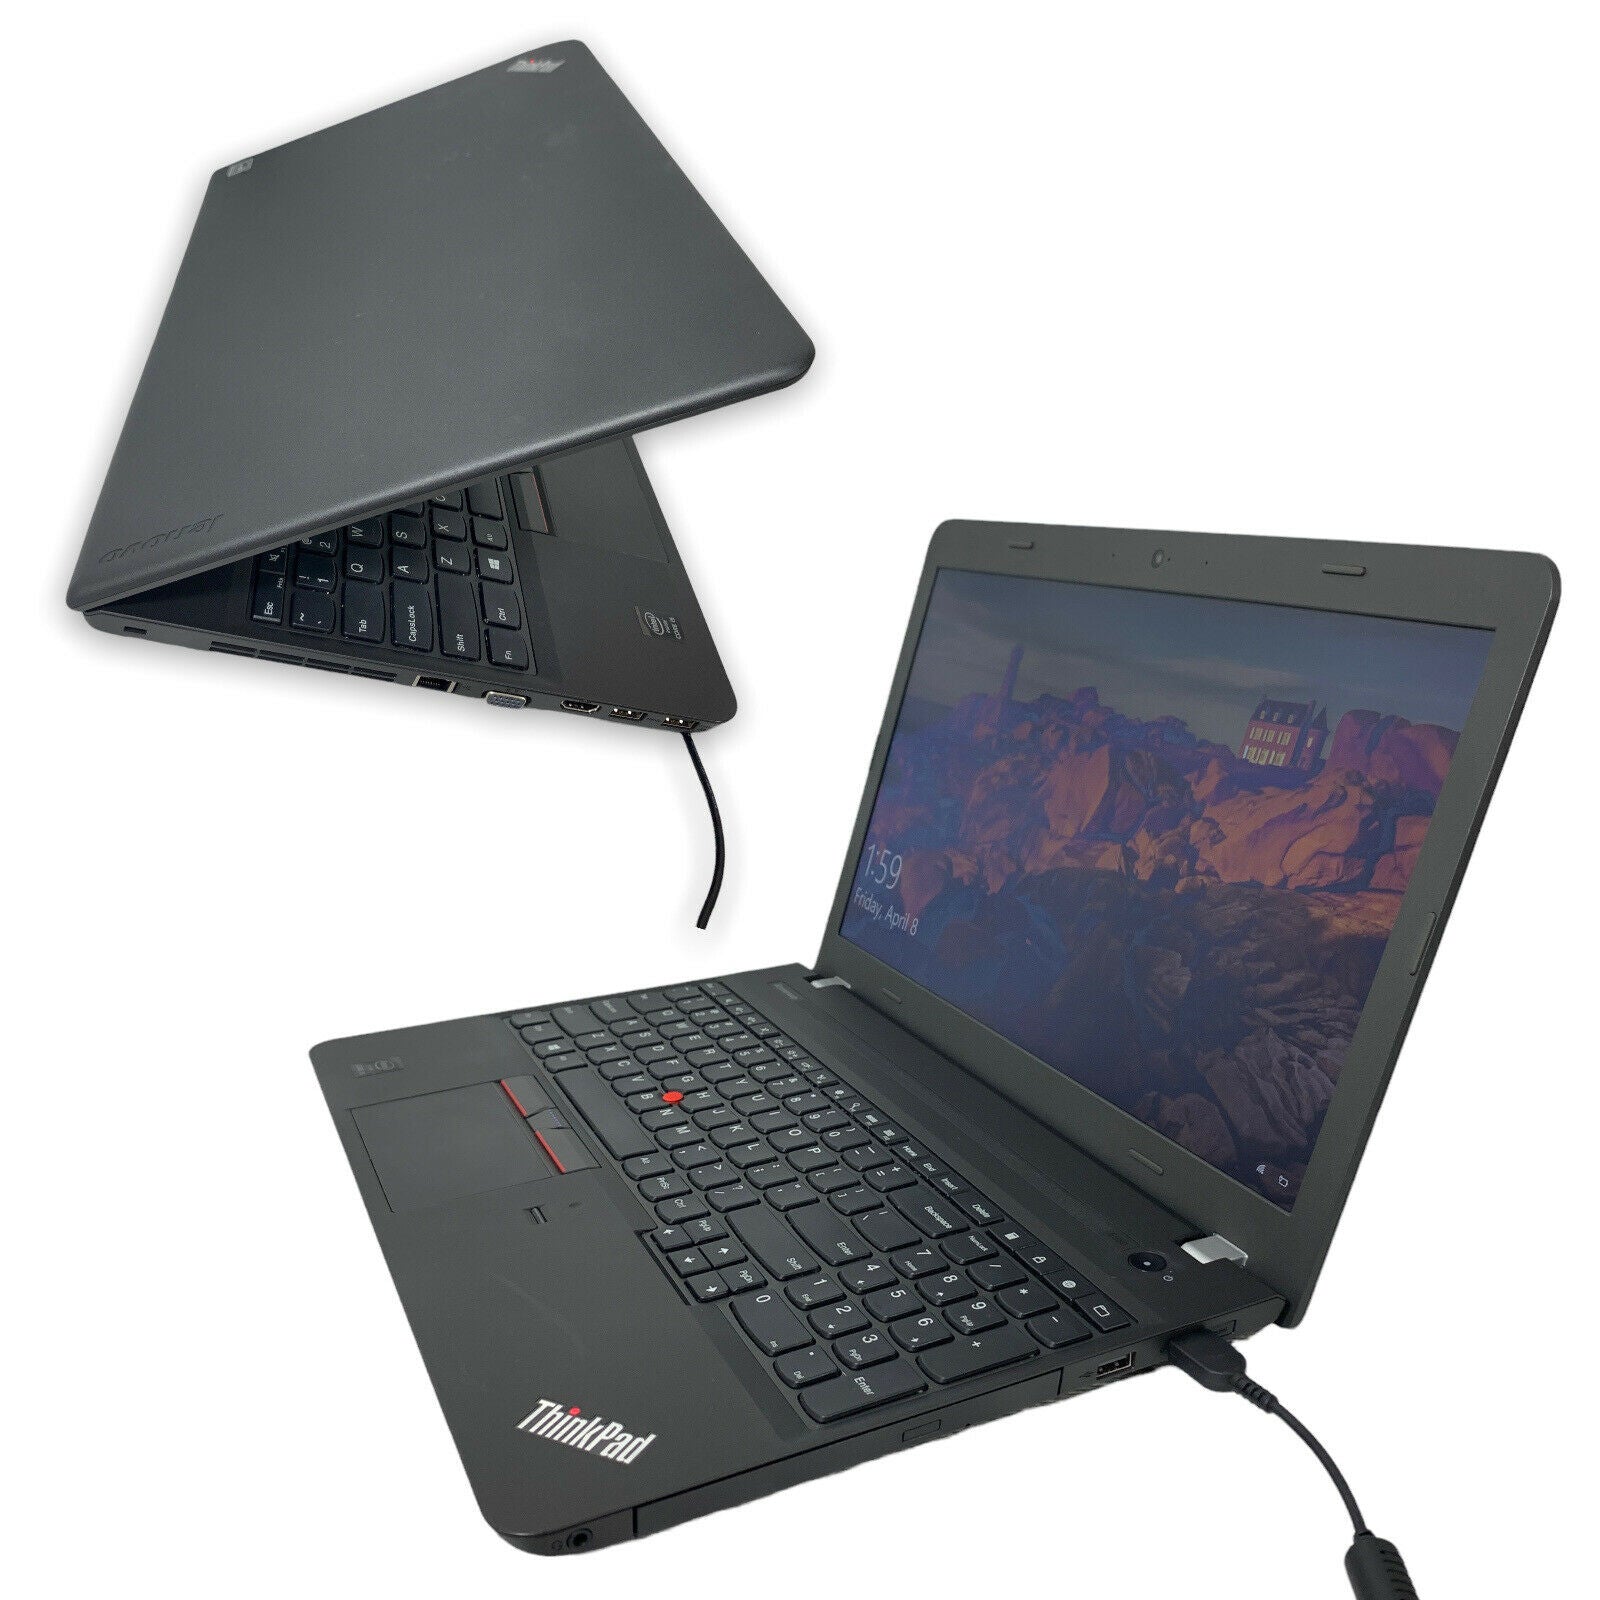 Lenovo ThinkPad E550 i5-5200U 2.20GHz 16GB RAM 500GB SSD DVD+RW Wi-Fi Laptop